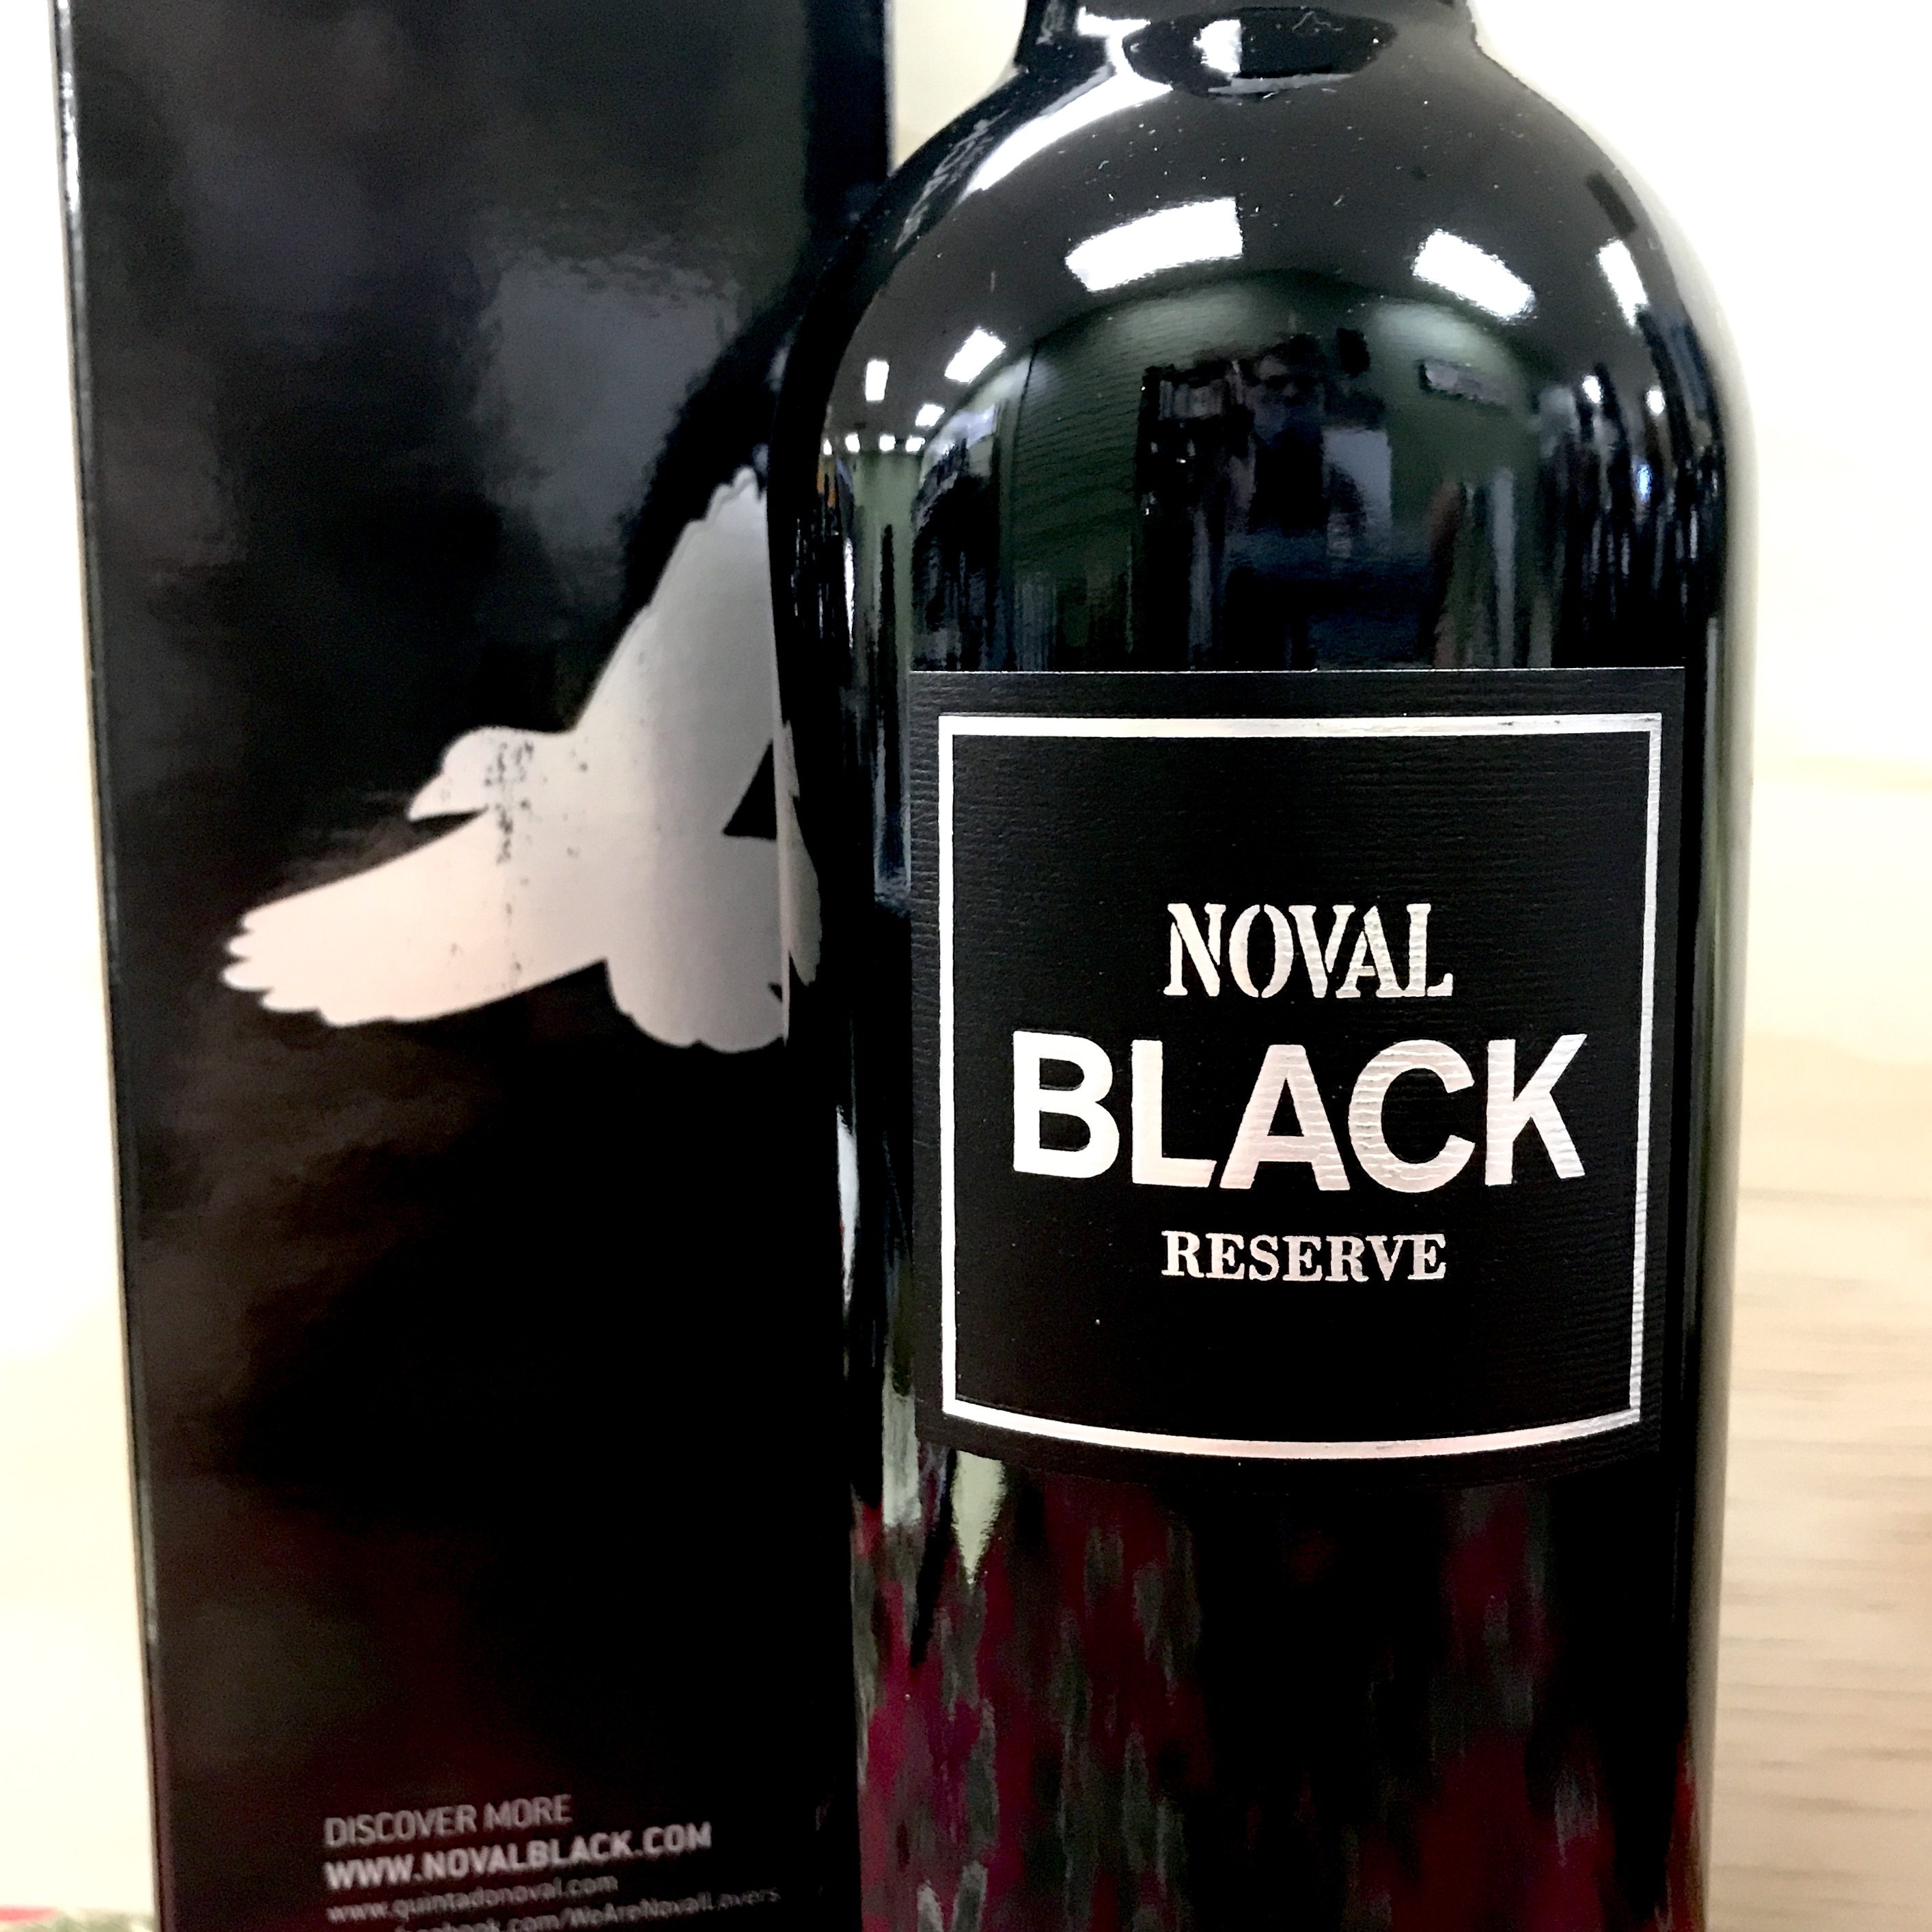 Noval Black Port NV